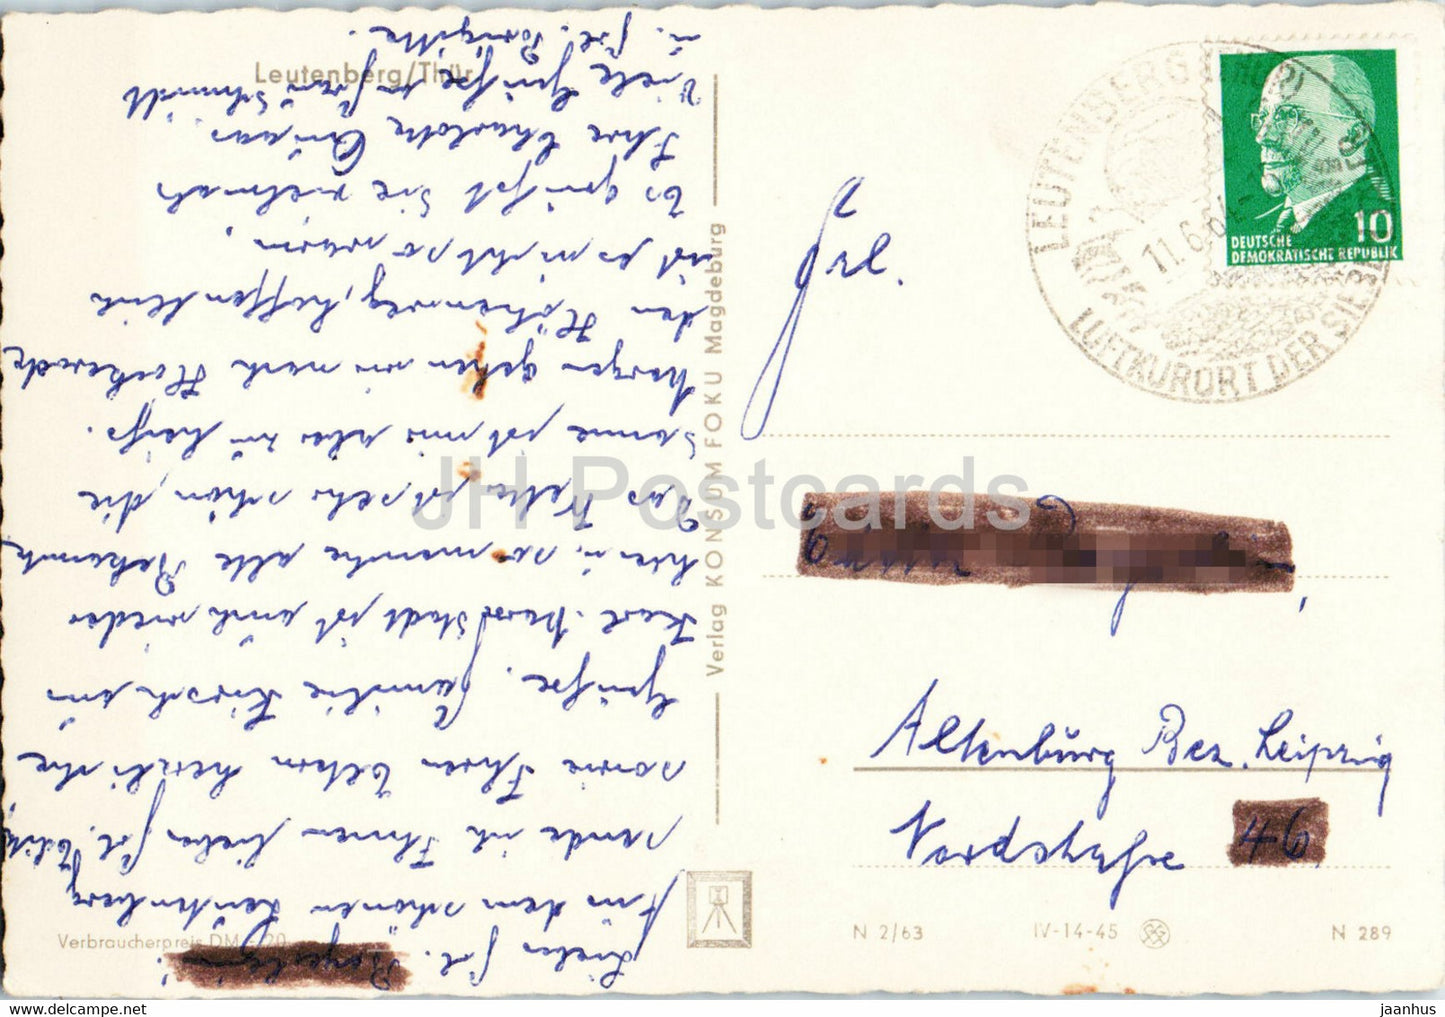 Leutenberg - Thur - carte postale ancienne - 1964 - Allemagne DDR - utilisé